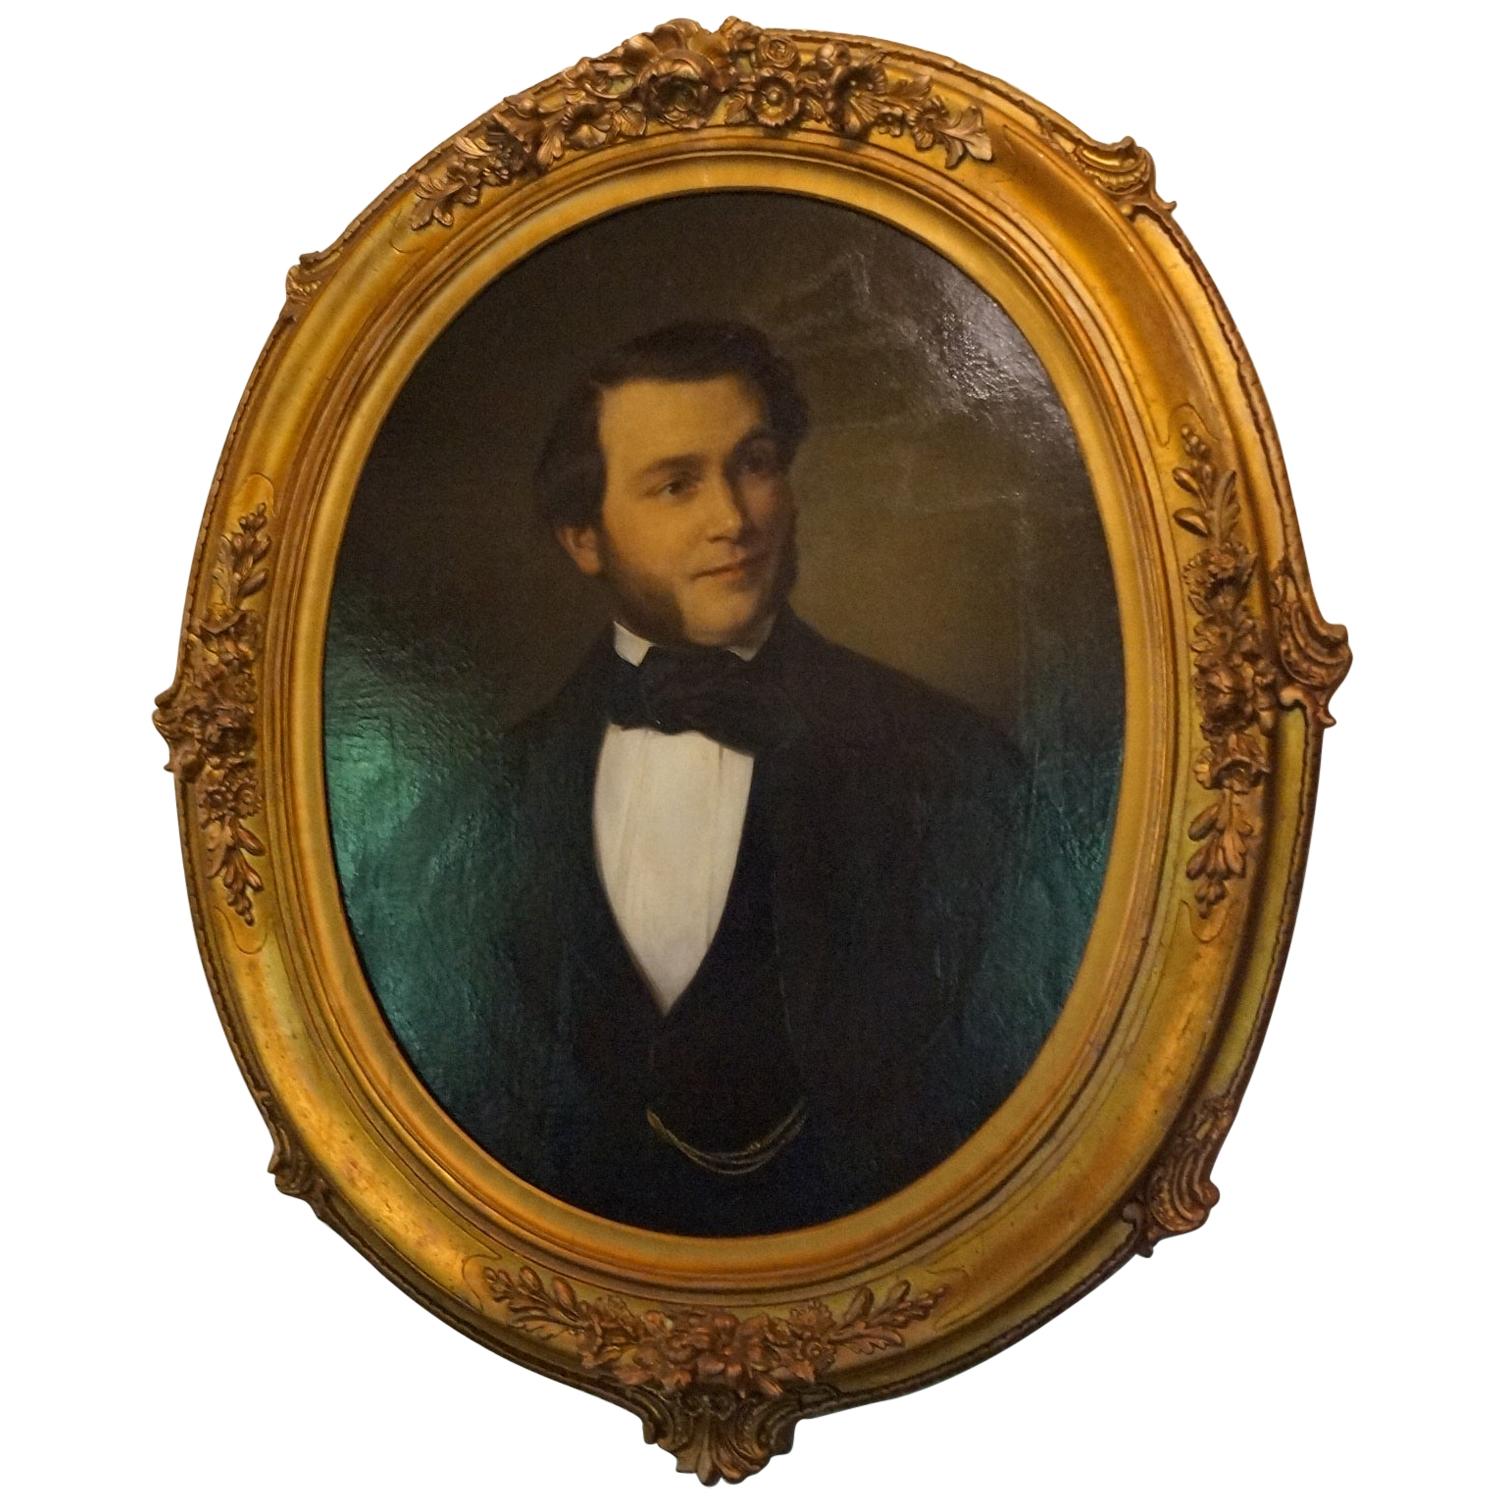 Bilderporträt aus dem Jahr 1853